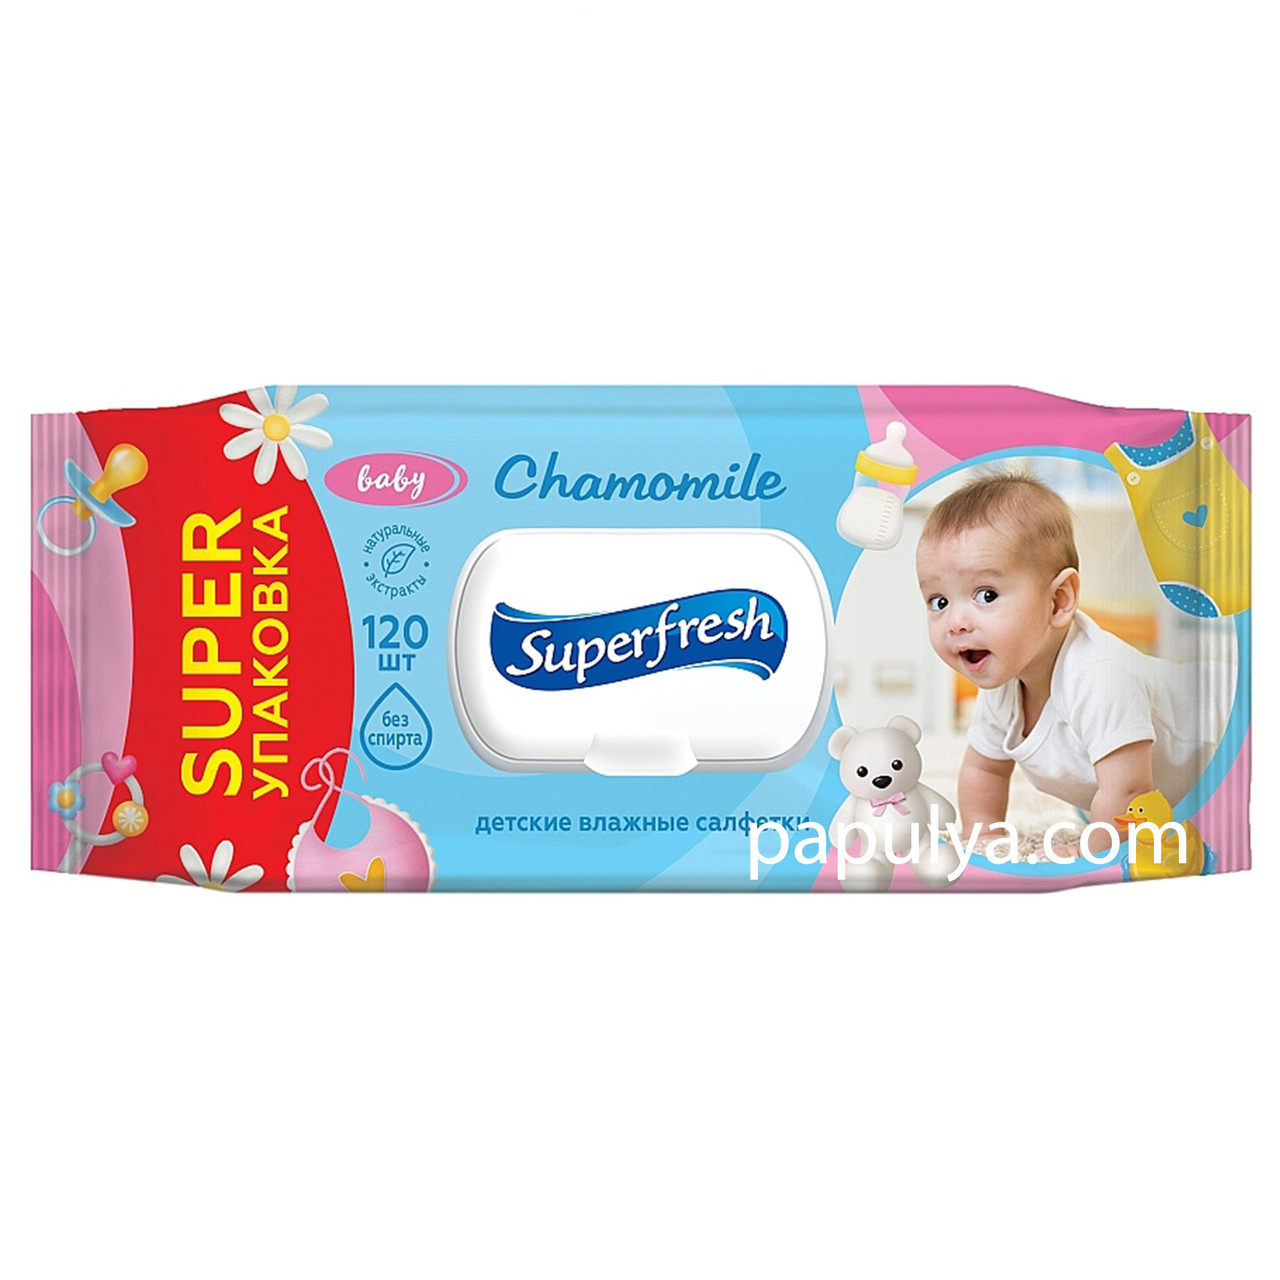 Детские влажные салфетки Baby Superfresh с клапаном 120 шт: продажа .